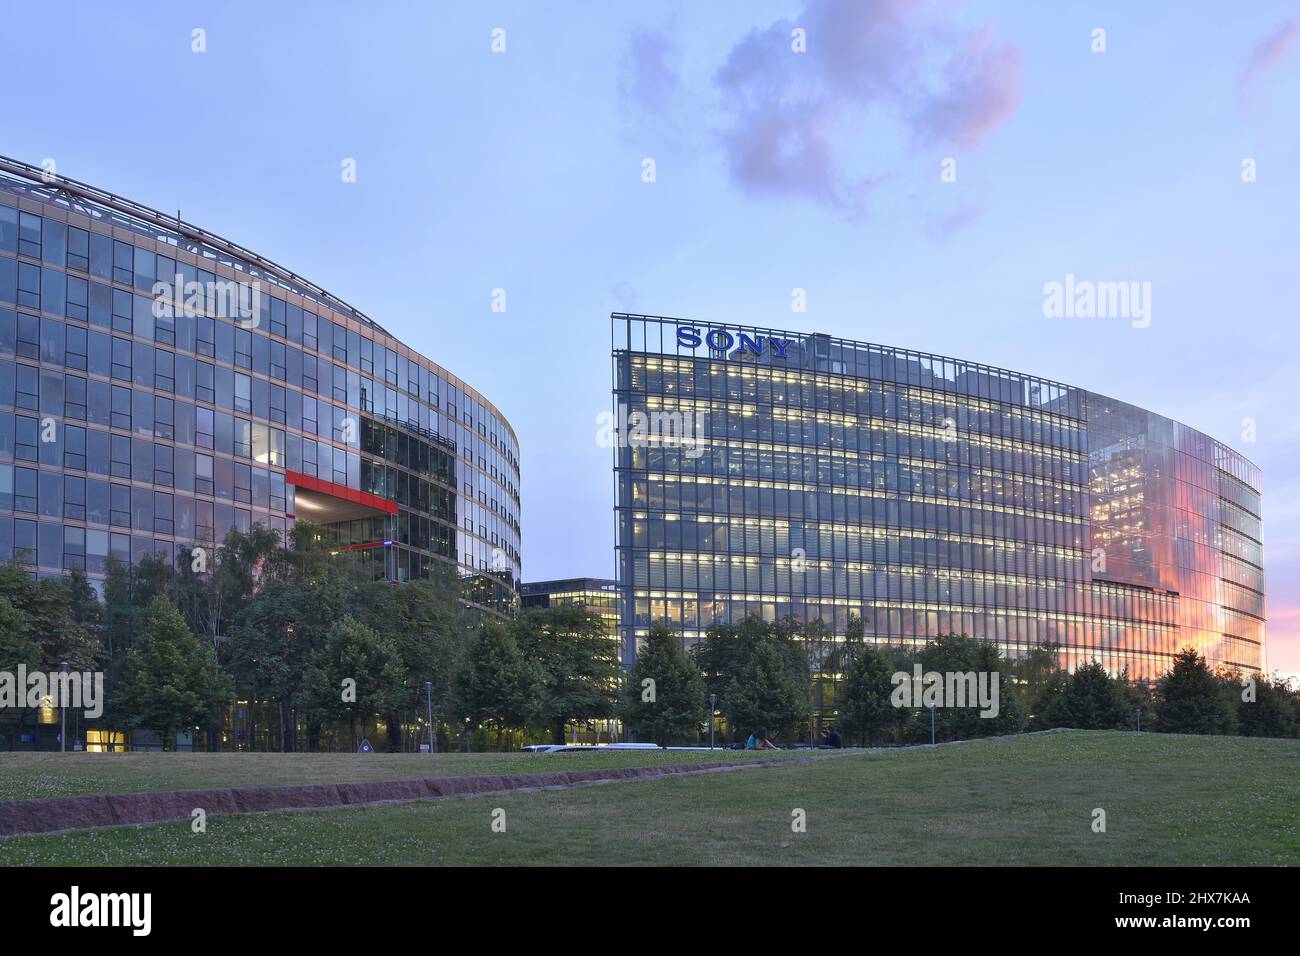 Le Sony Centre est un établissement commercial moderne situé à la tombée de la nuit, sur la Potsdamer Platz, à Berlin, en Allemagne. Banque D'Images